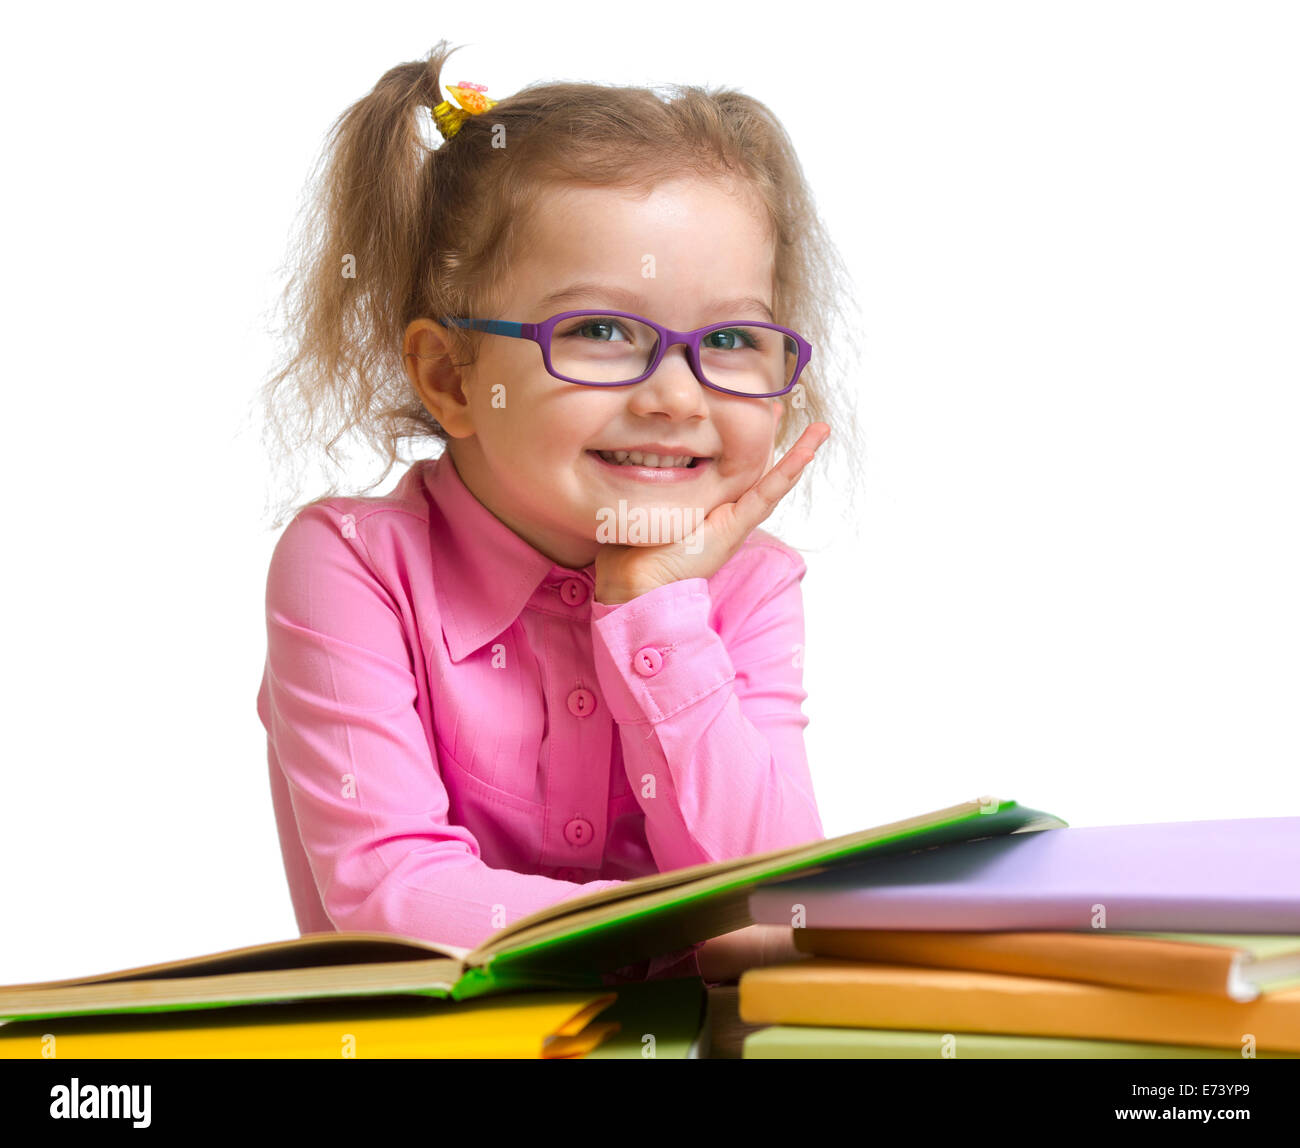 Happy smiling kid girl dans les verres la lecture de livres sitting at table Banque D'Images